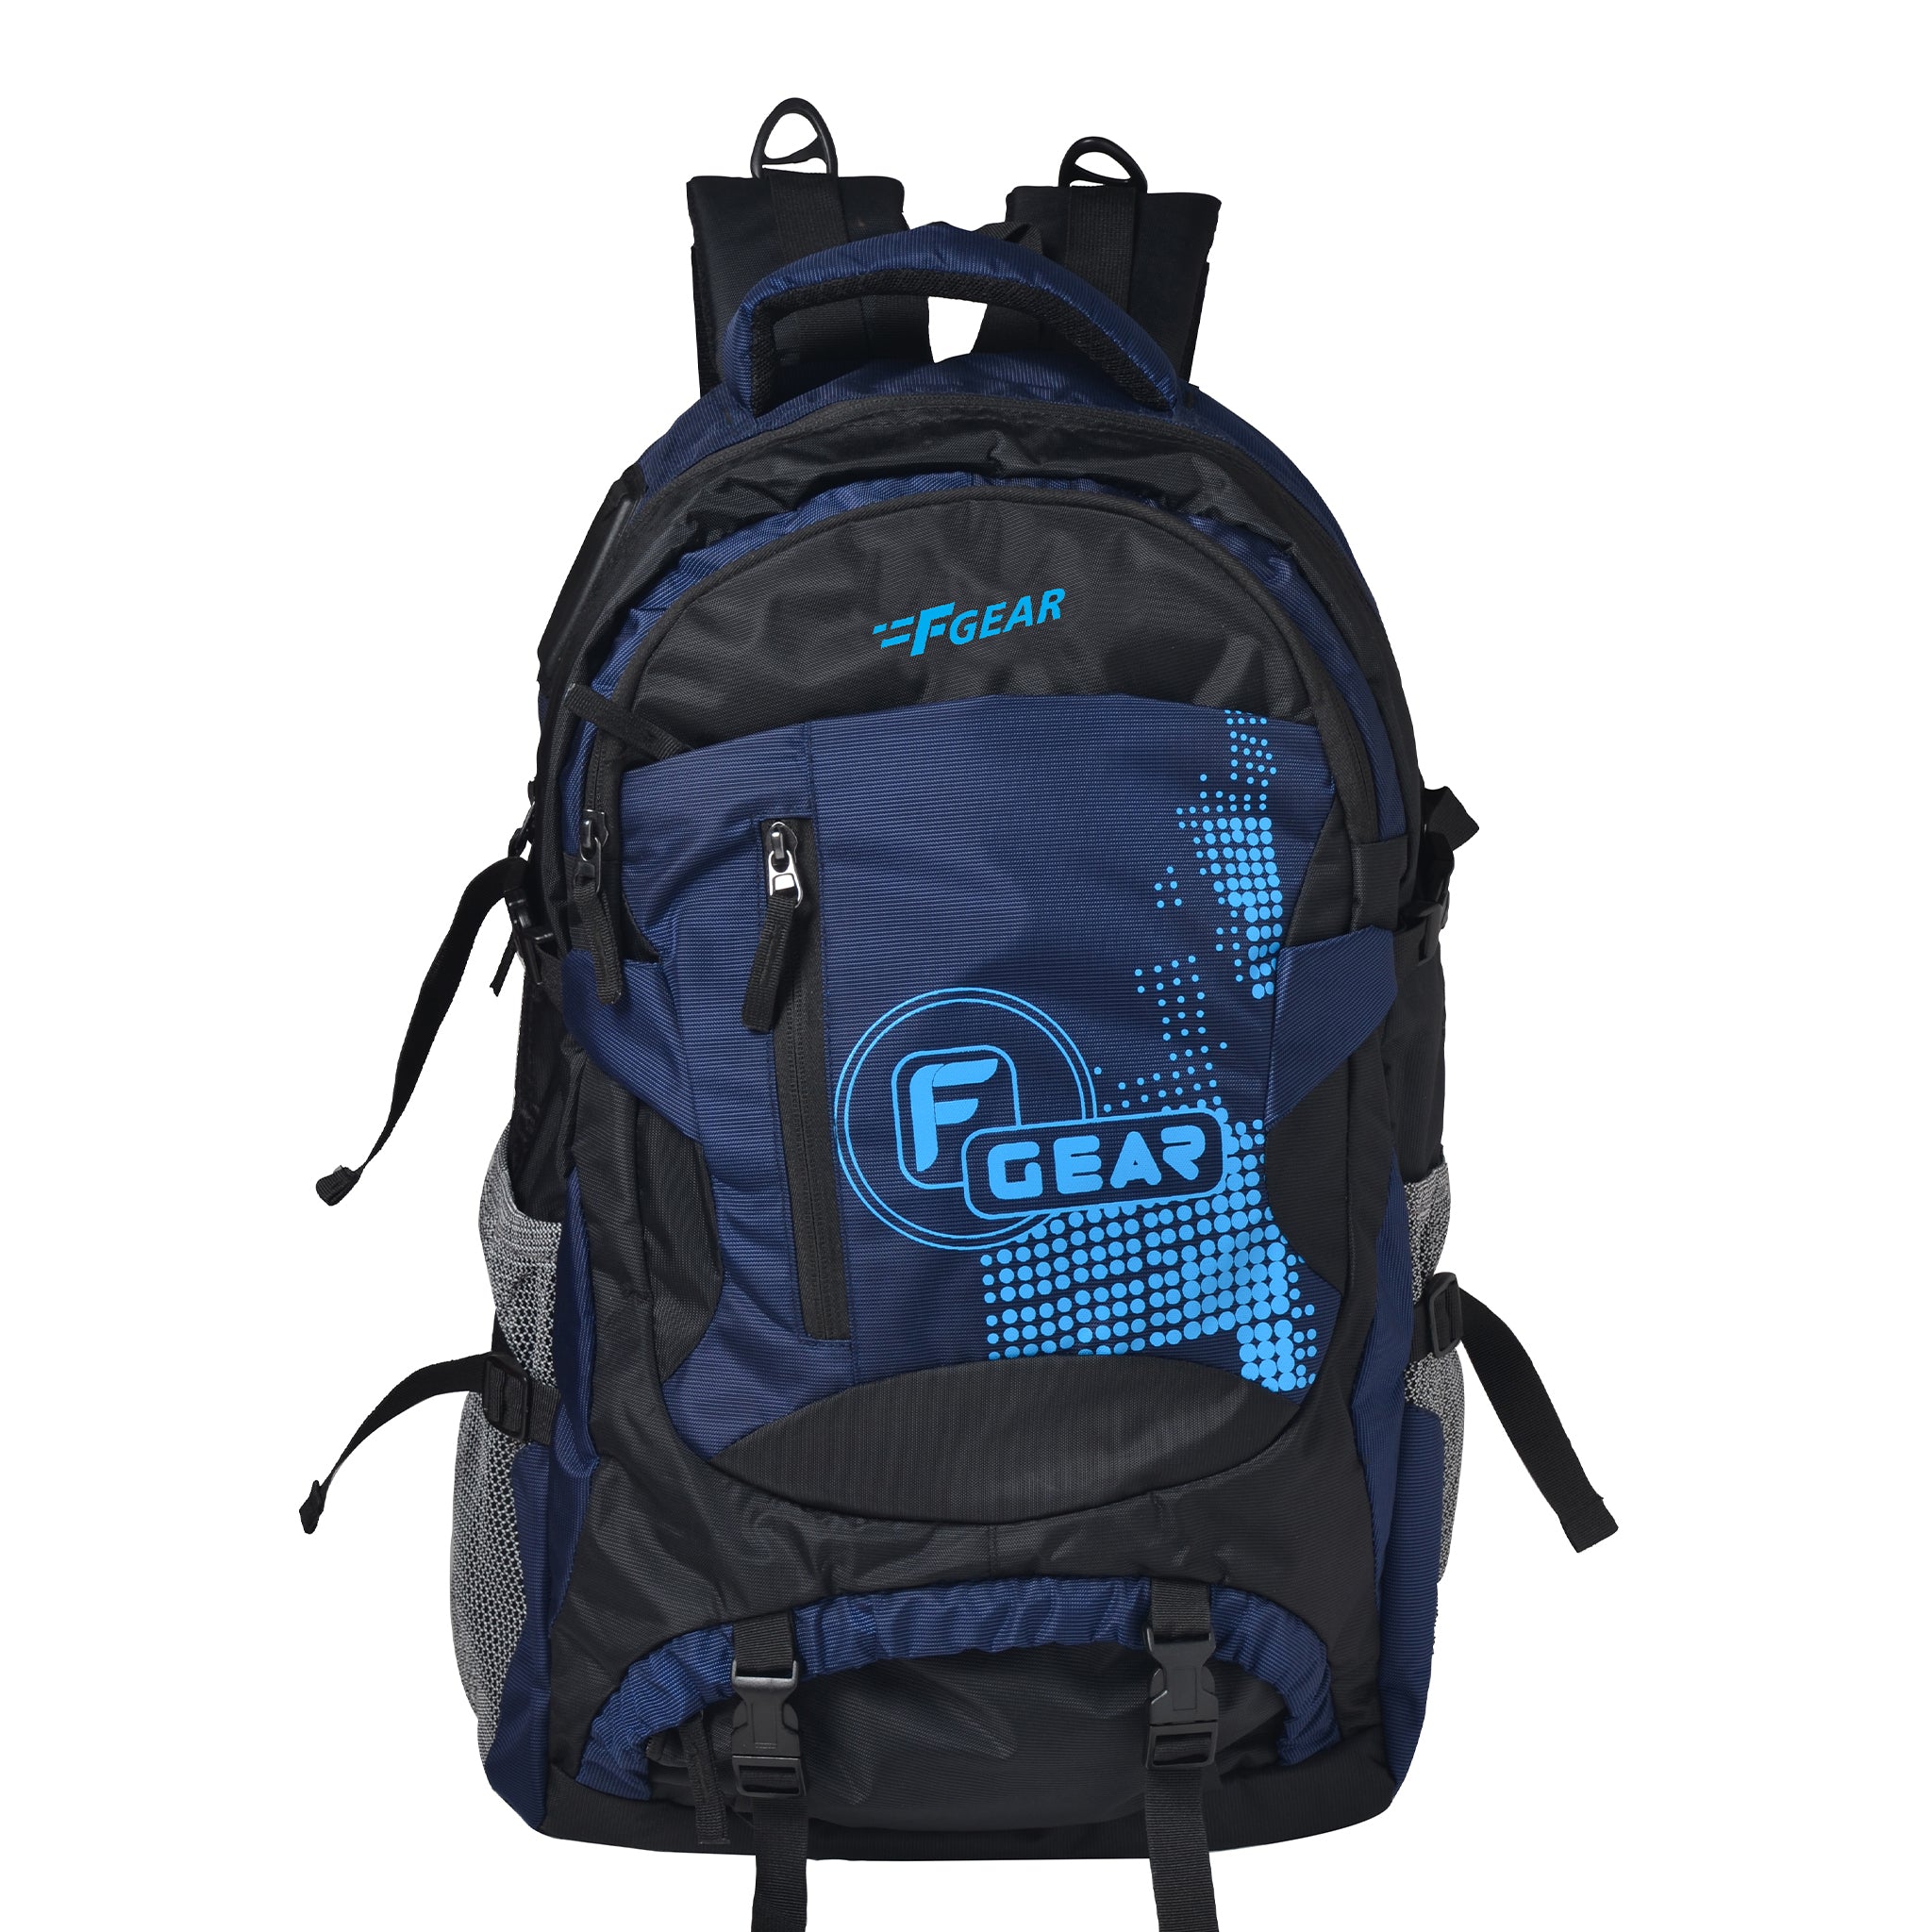 JMT™ 25L Backpack | Mountain Hardwear